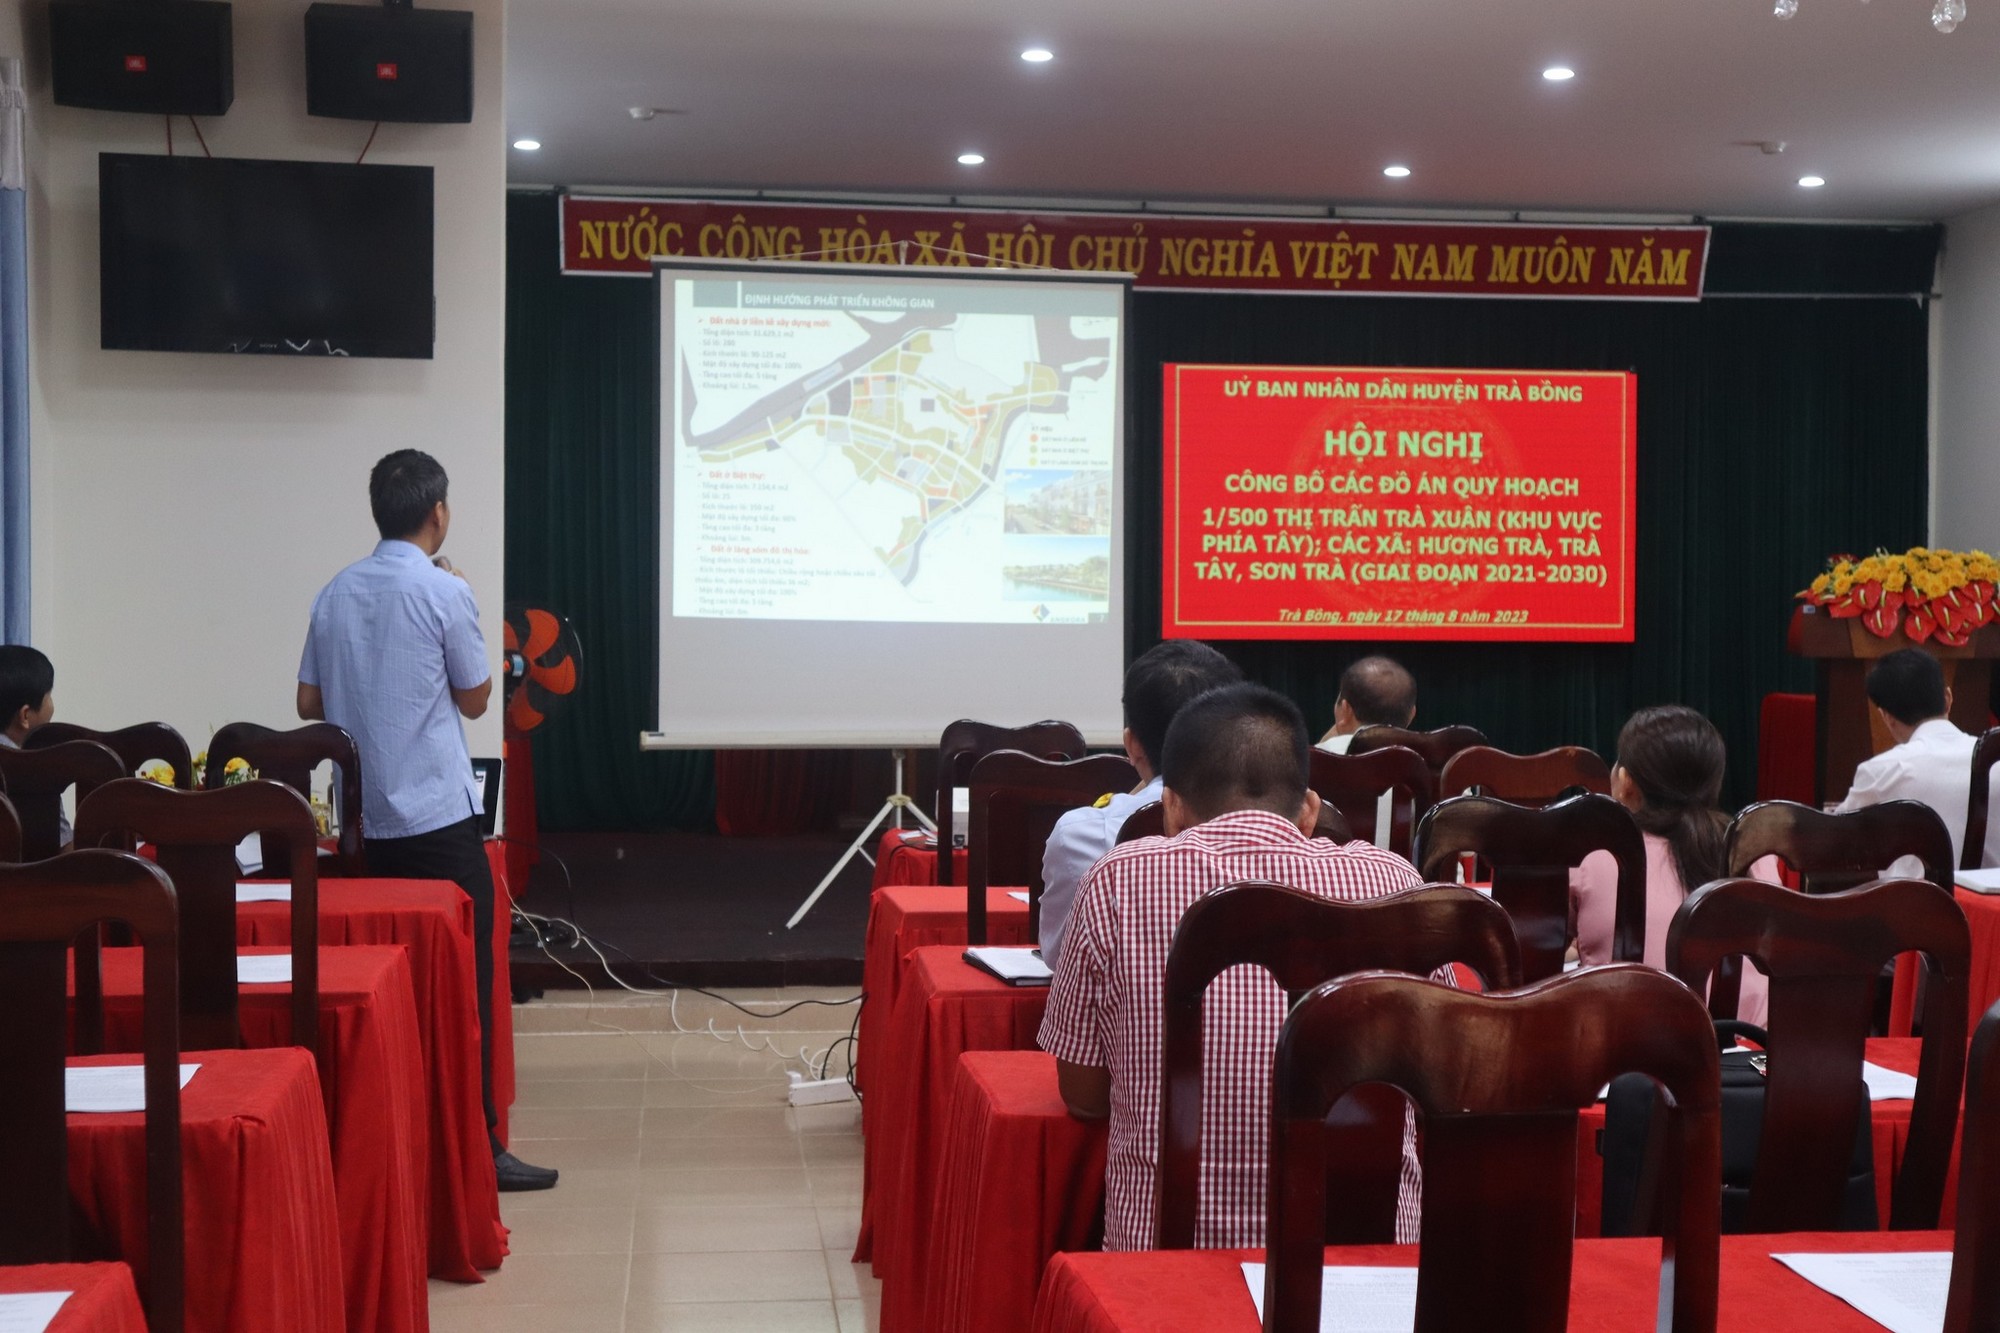 Hội nghị Công bố Đồ án quy hoạch 1/500 khu vực phía Tây thị trấn Trà Xuân và các xã sau sáp nhập, giai đoạn 2021-2030